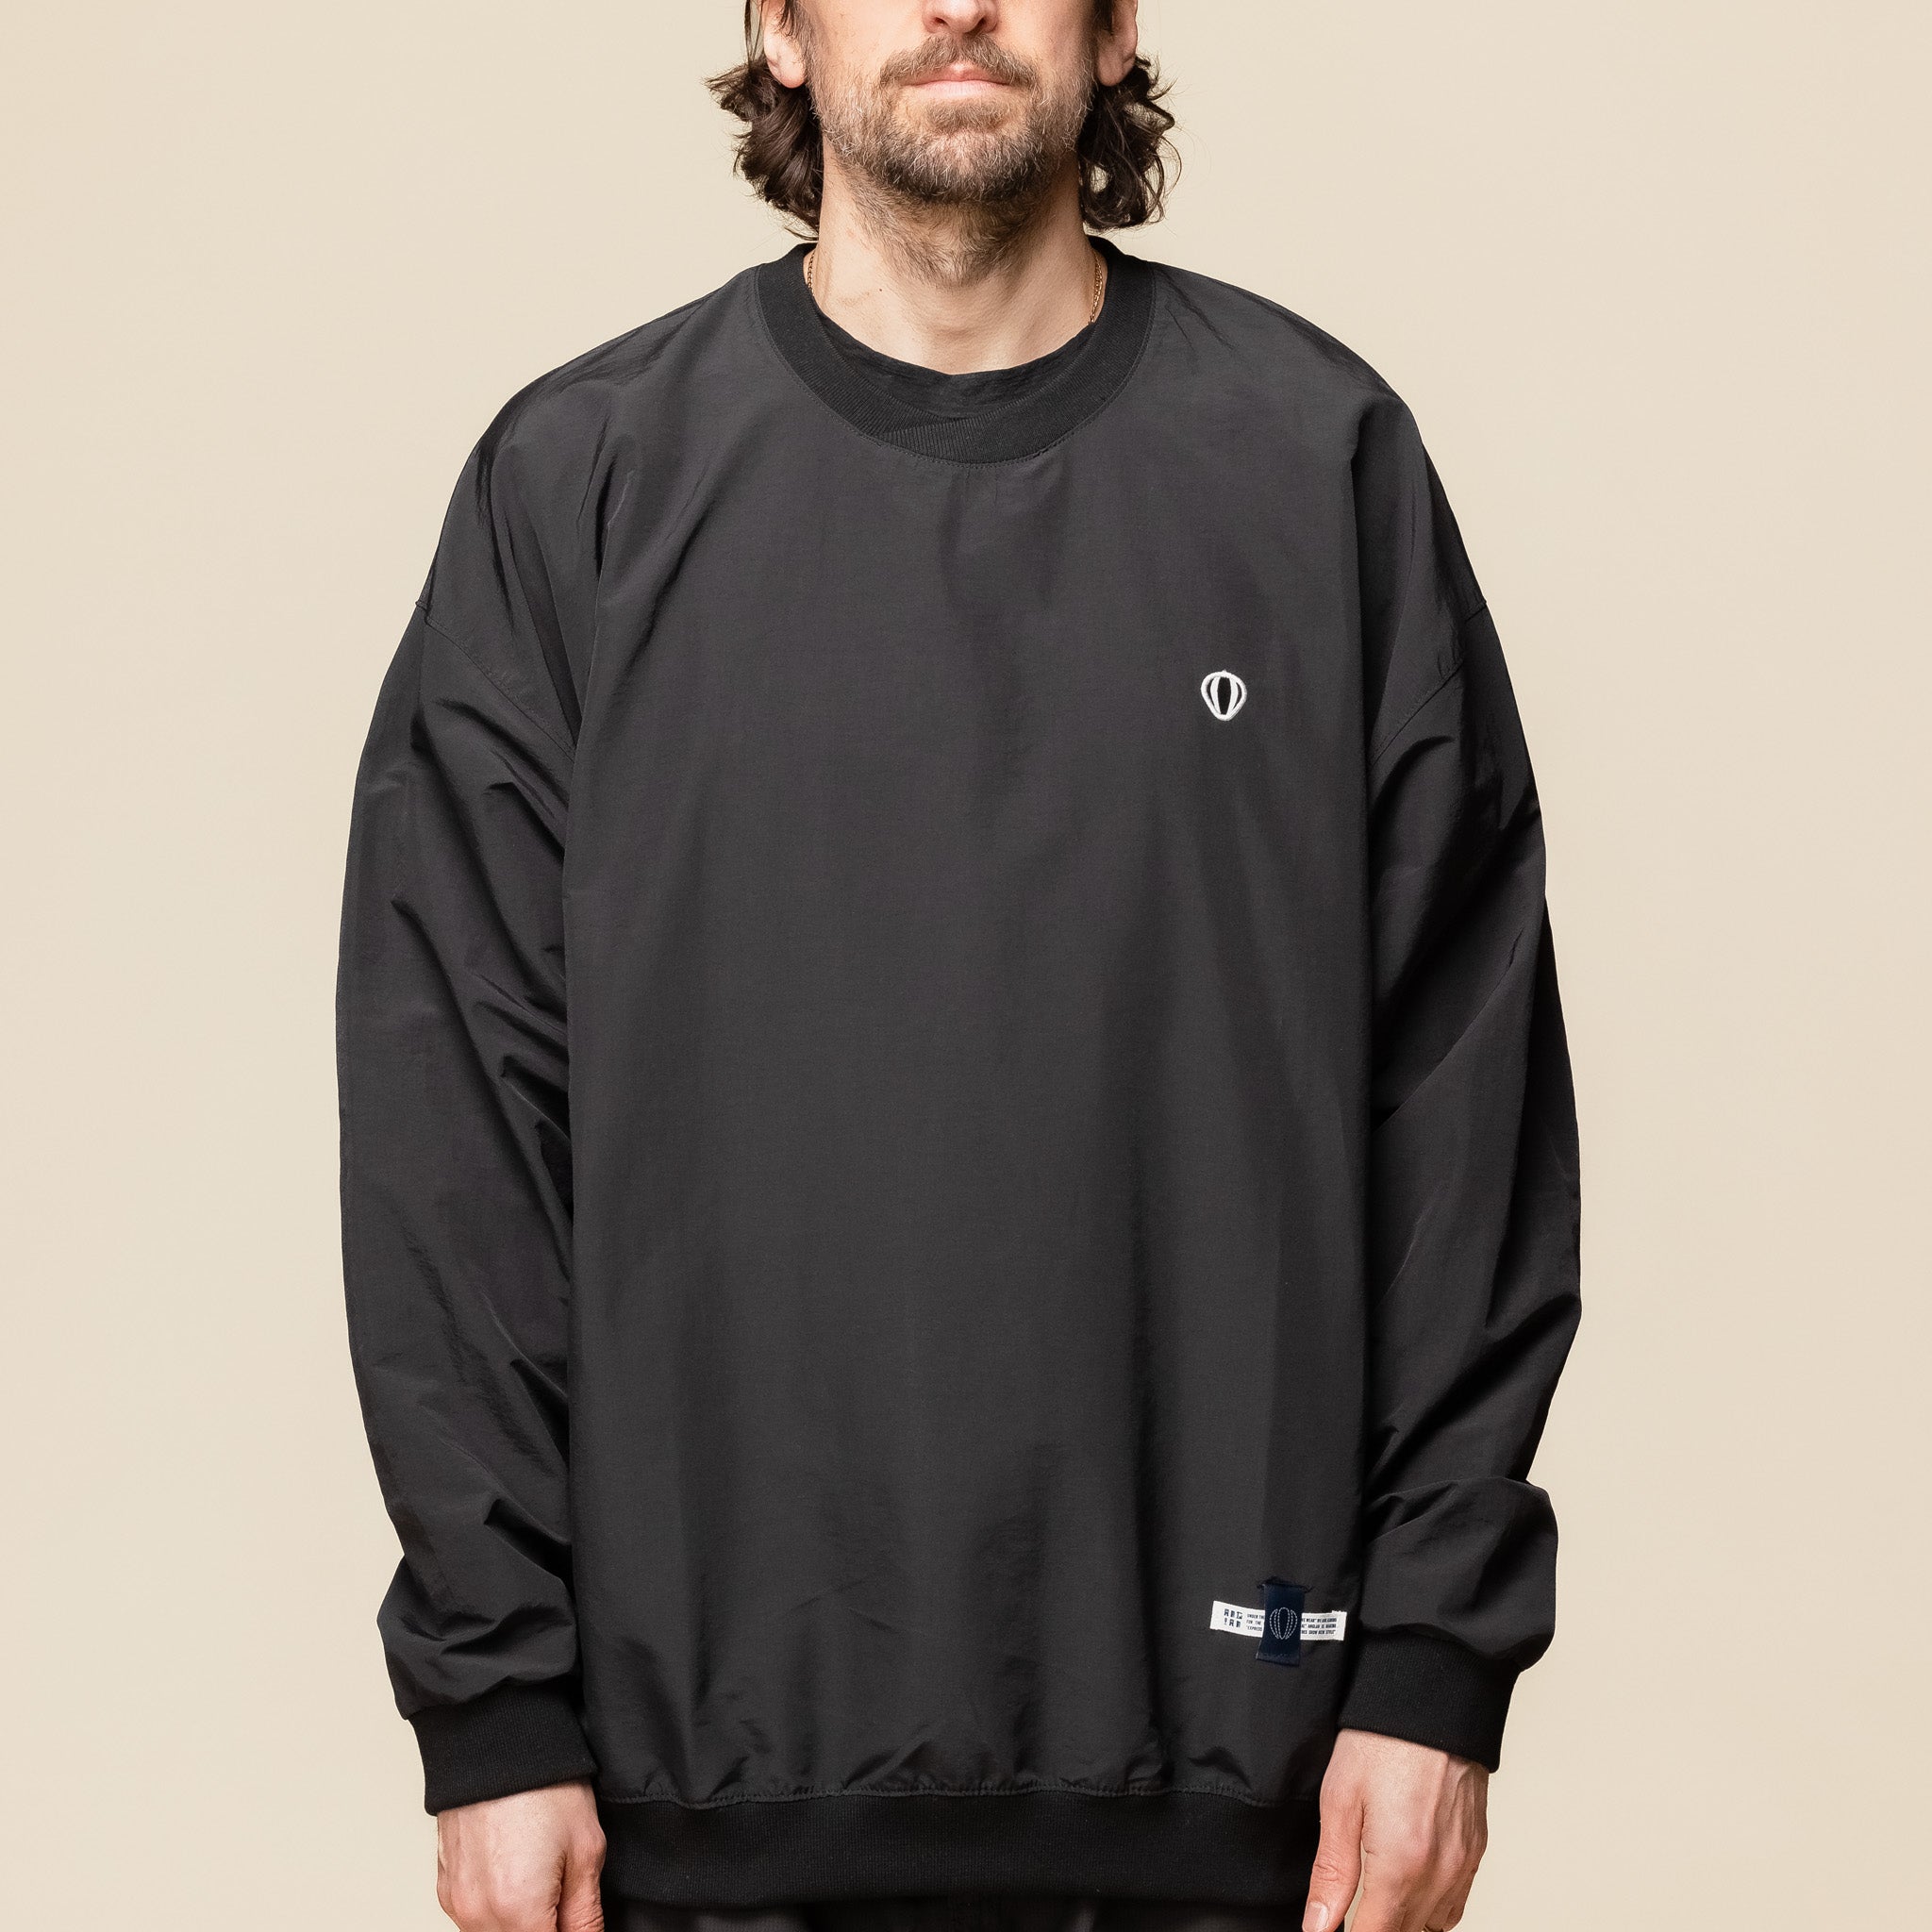 Anglan - Windbreaker Sweatshirt - Black